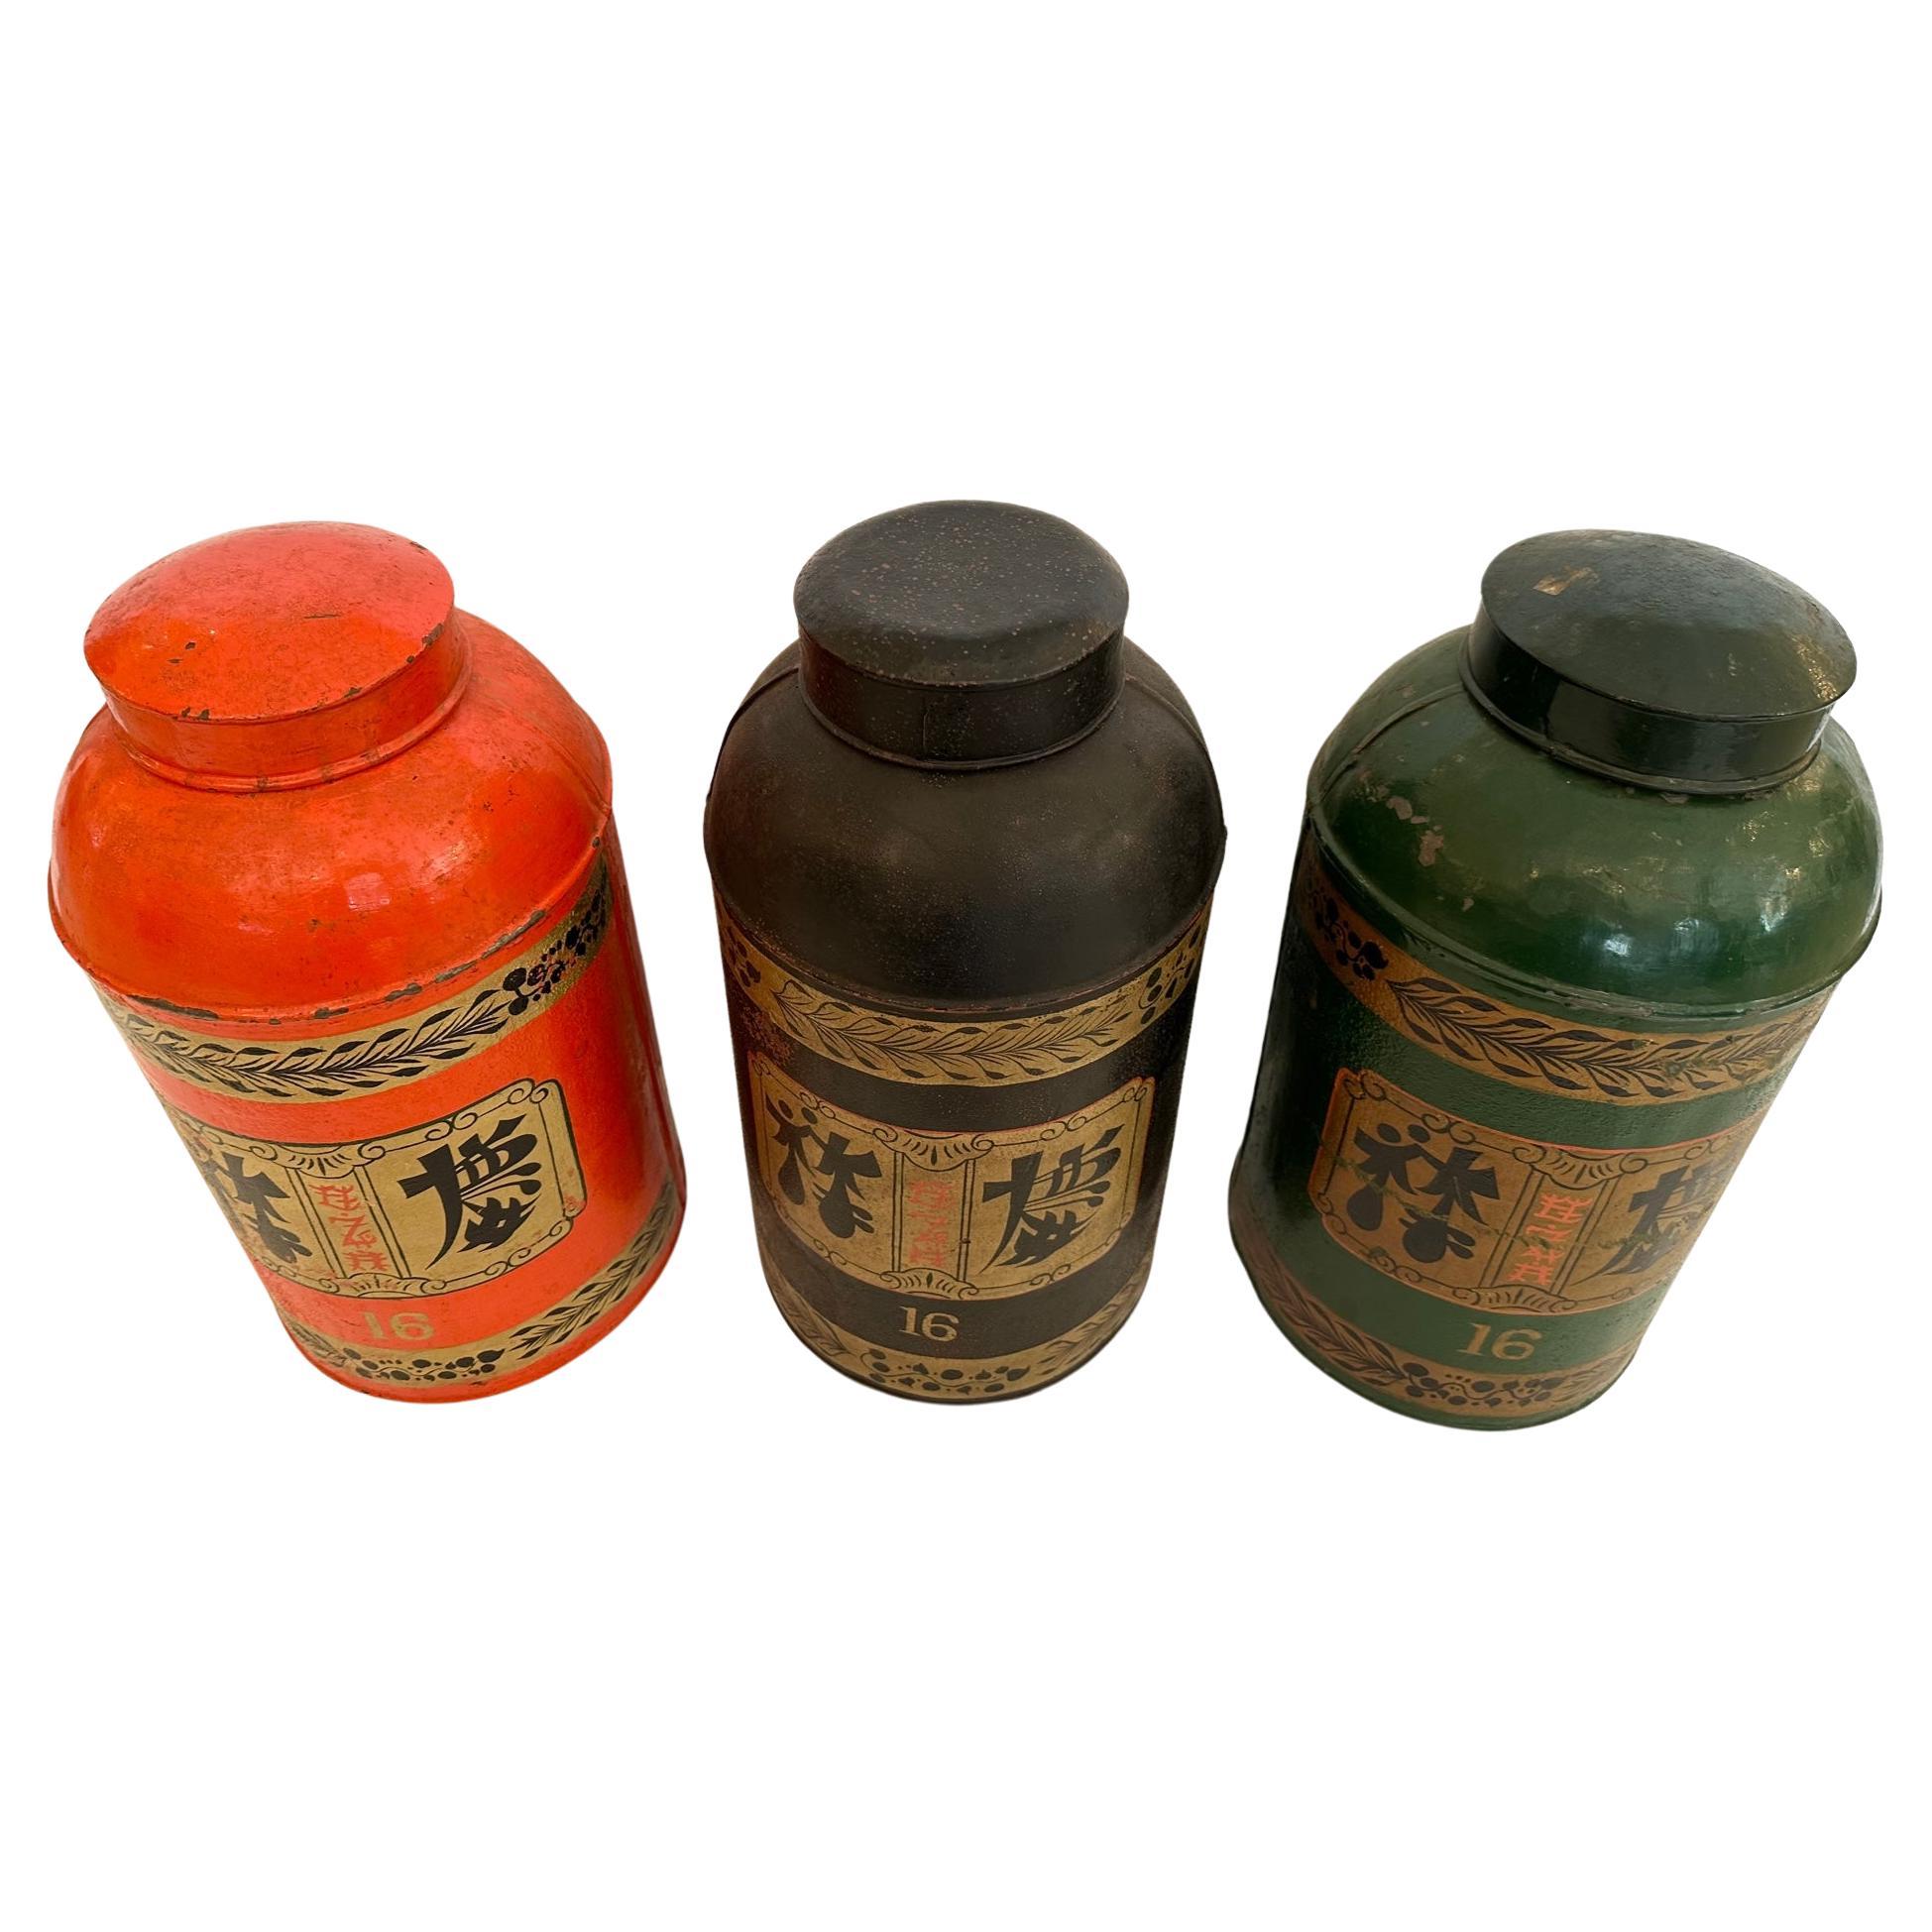 Magnifique ensemble de 3 boîtes à thé chinoises antiques en métal peintes à la main, avec une magnifique décoration graphique.  Les couleurs sont l'orange, le noir et le vert.